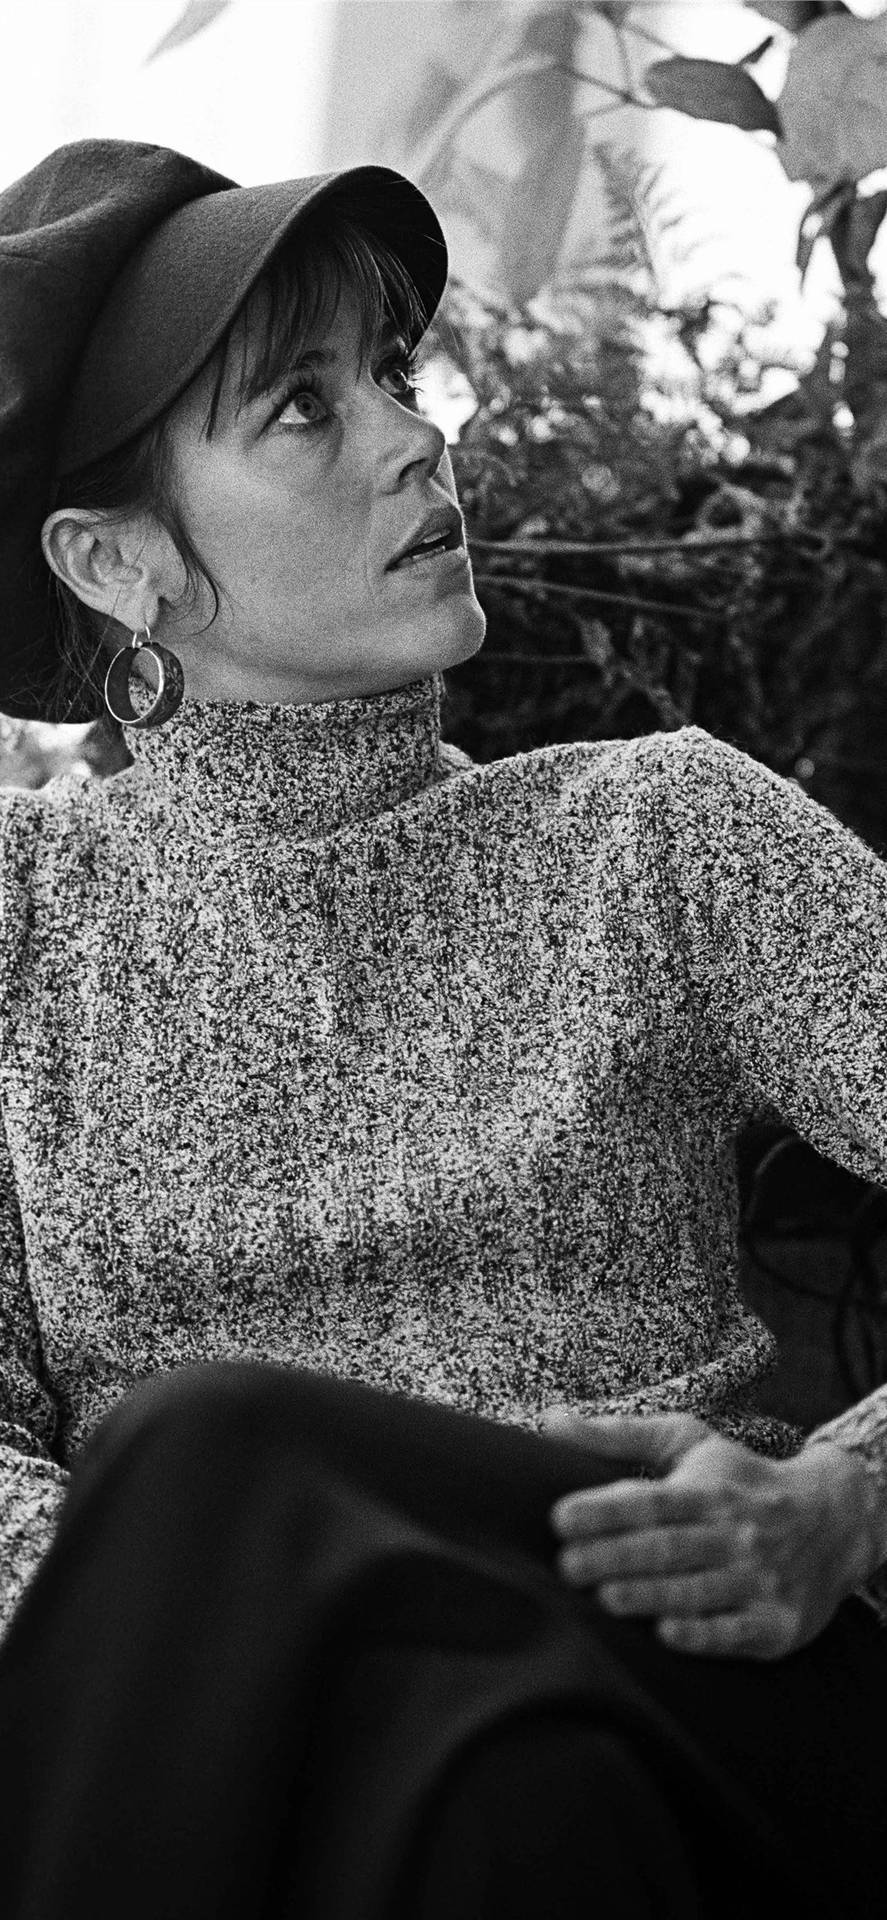 Actrizestadounidense Jane Fonda Con Suéter De Cuello Alto Fondo de pantalla